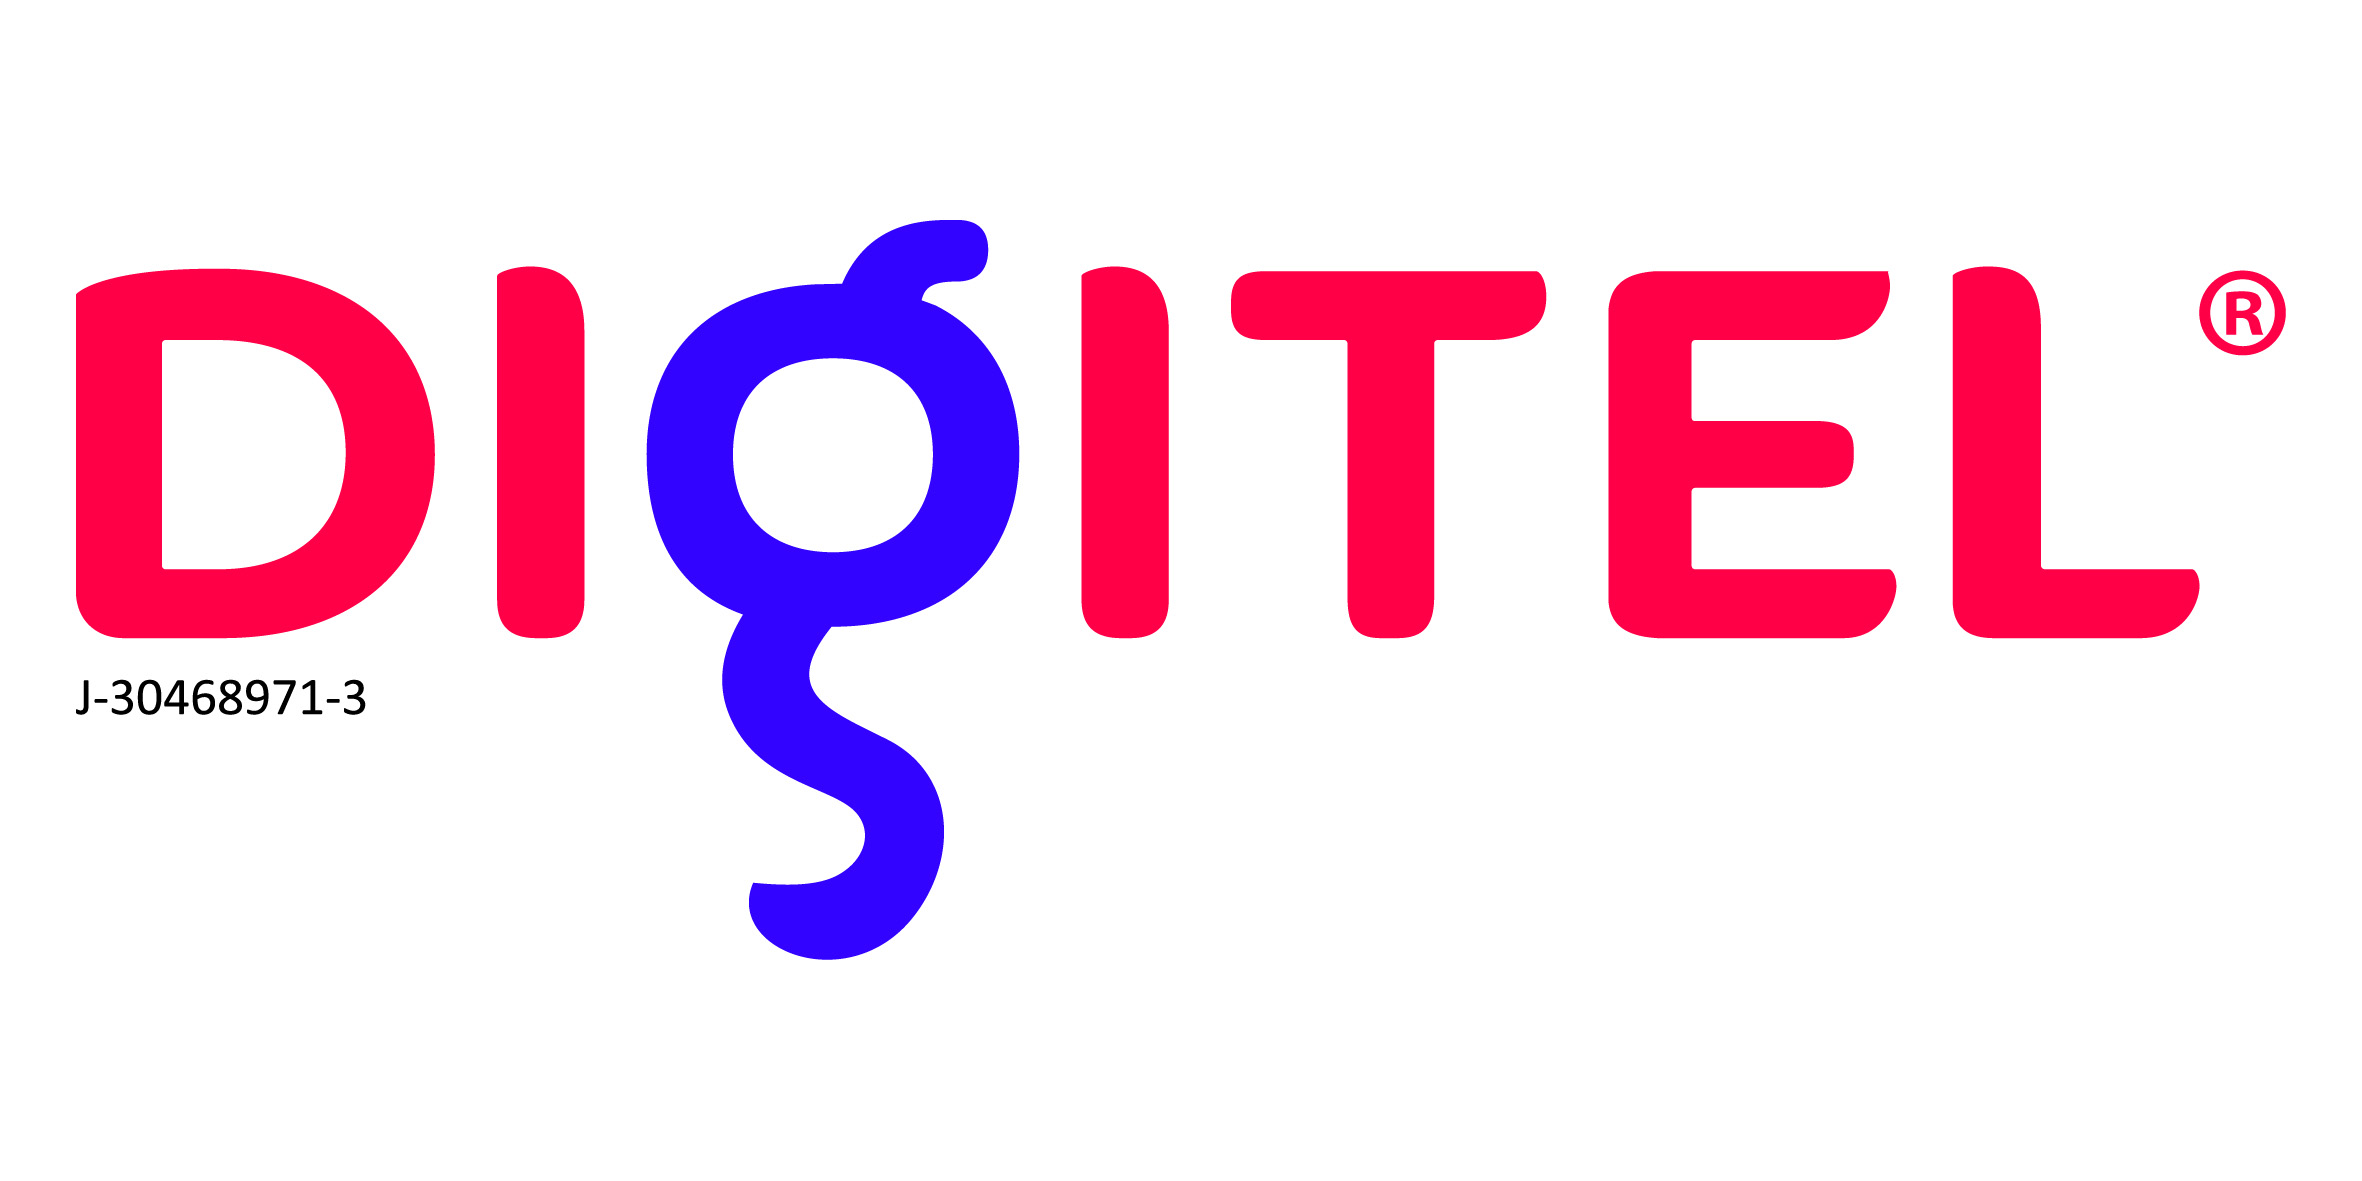 Digitel ajusta nuevamente las tarifas de sus servicios